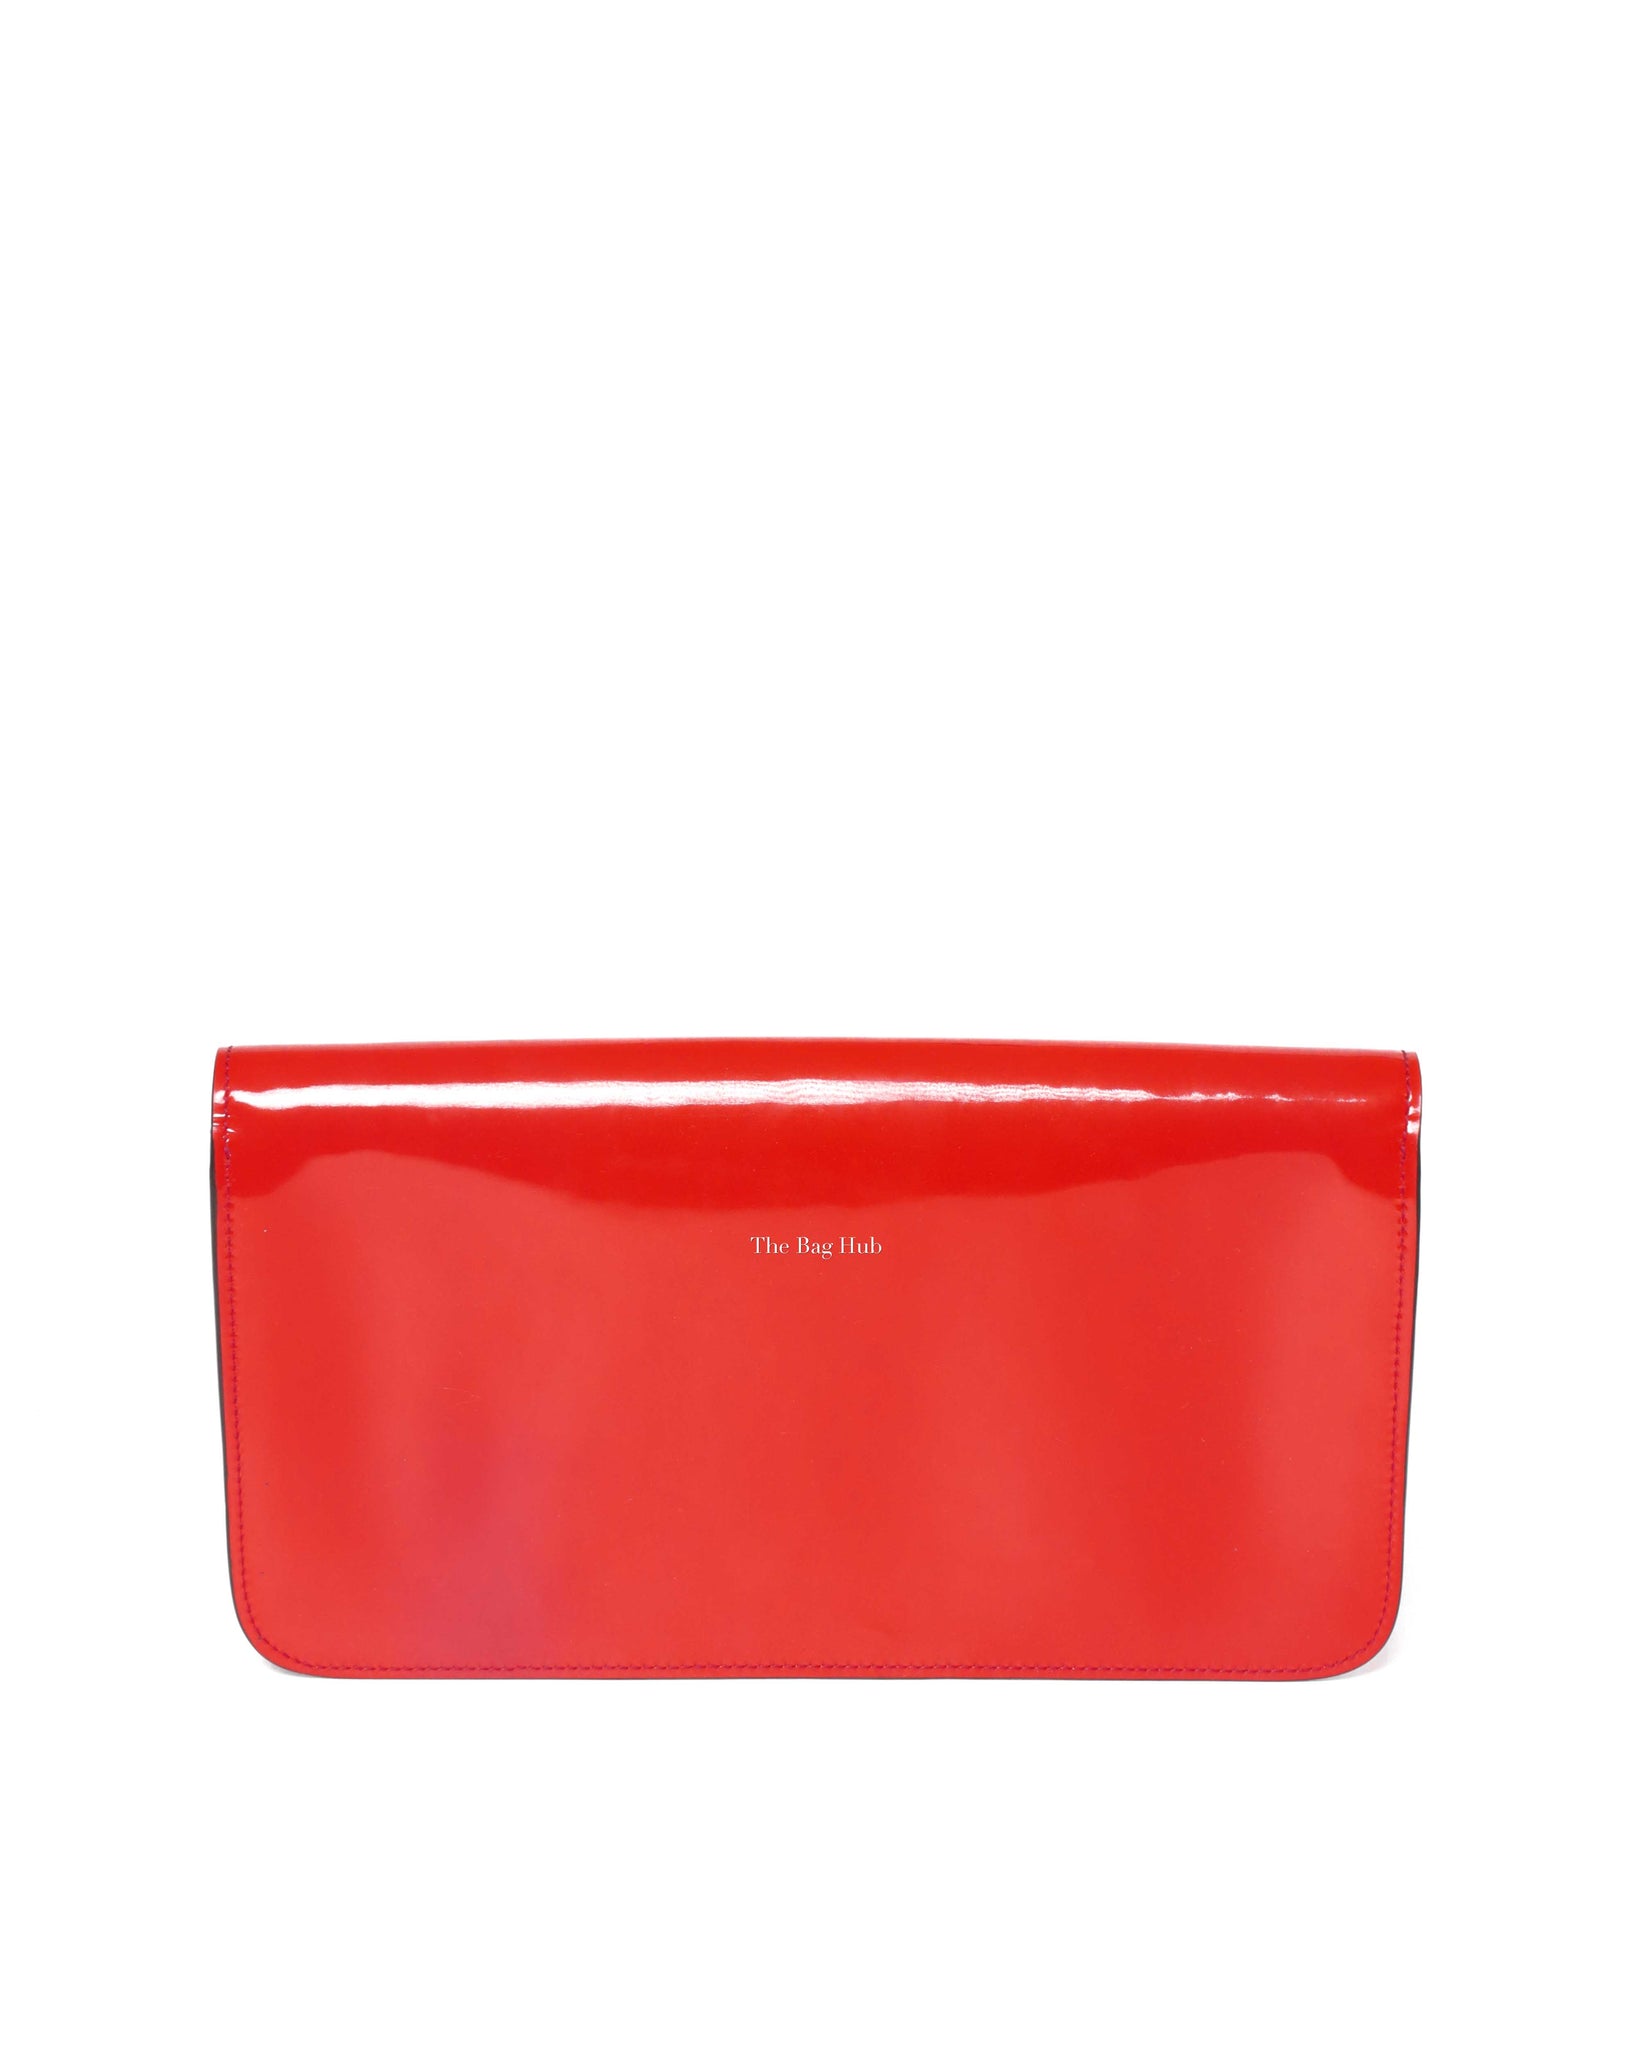 Gucci Red/Orange Patent Leather Bright Bit Clutch-3